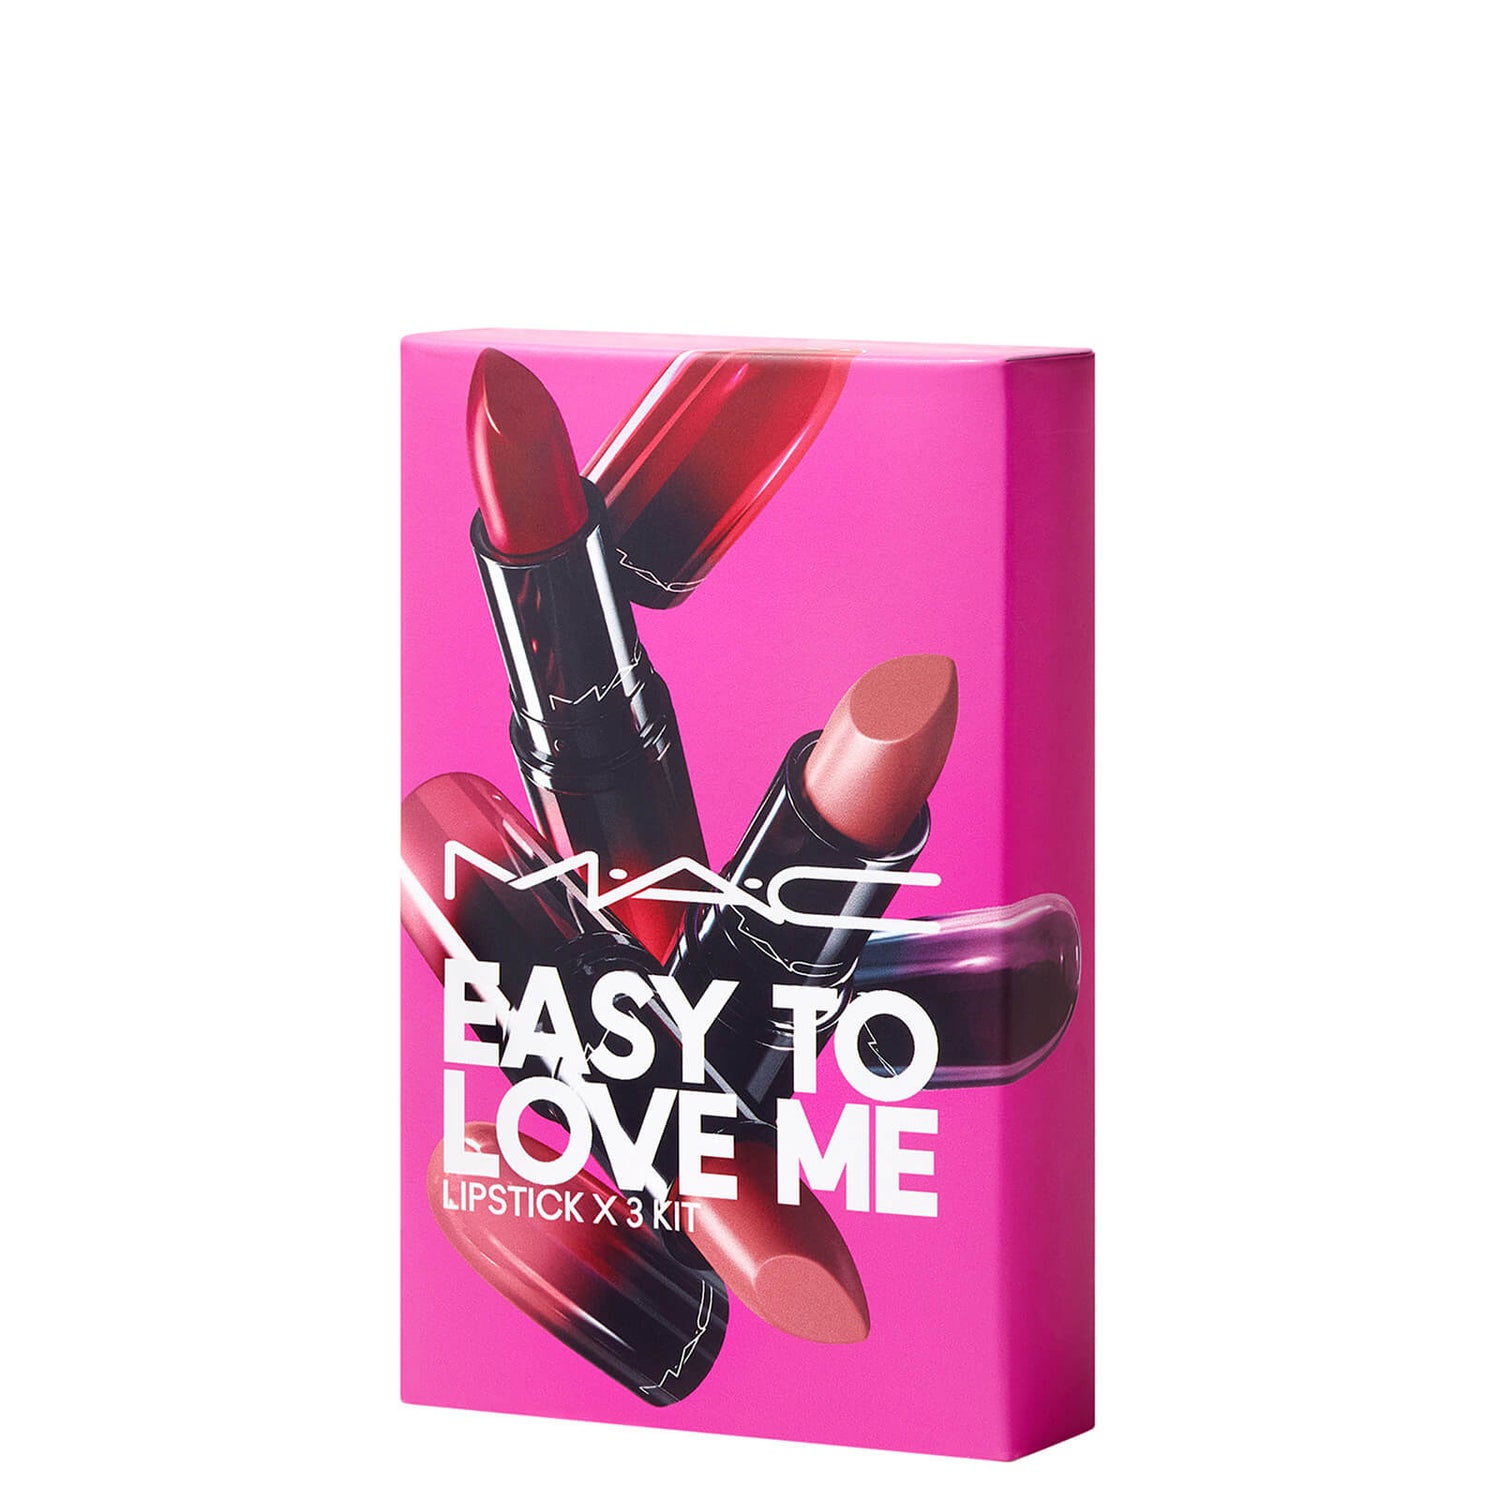 Kit de rouge à lèvres MAC Easy To Love Me